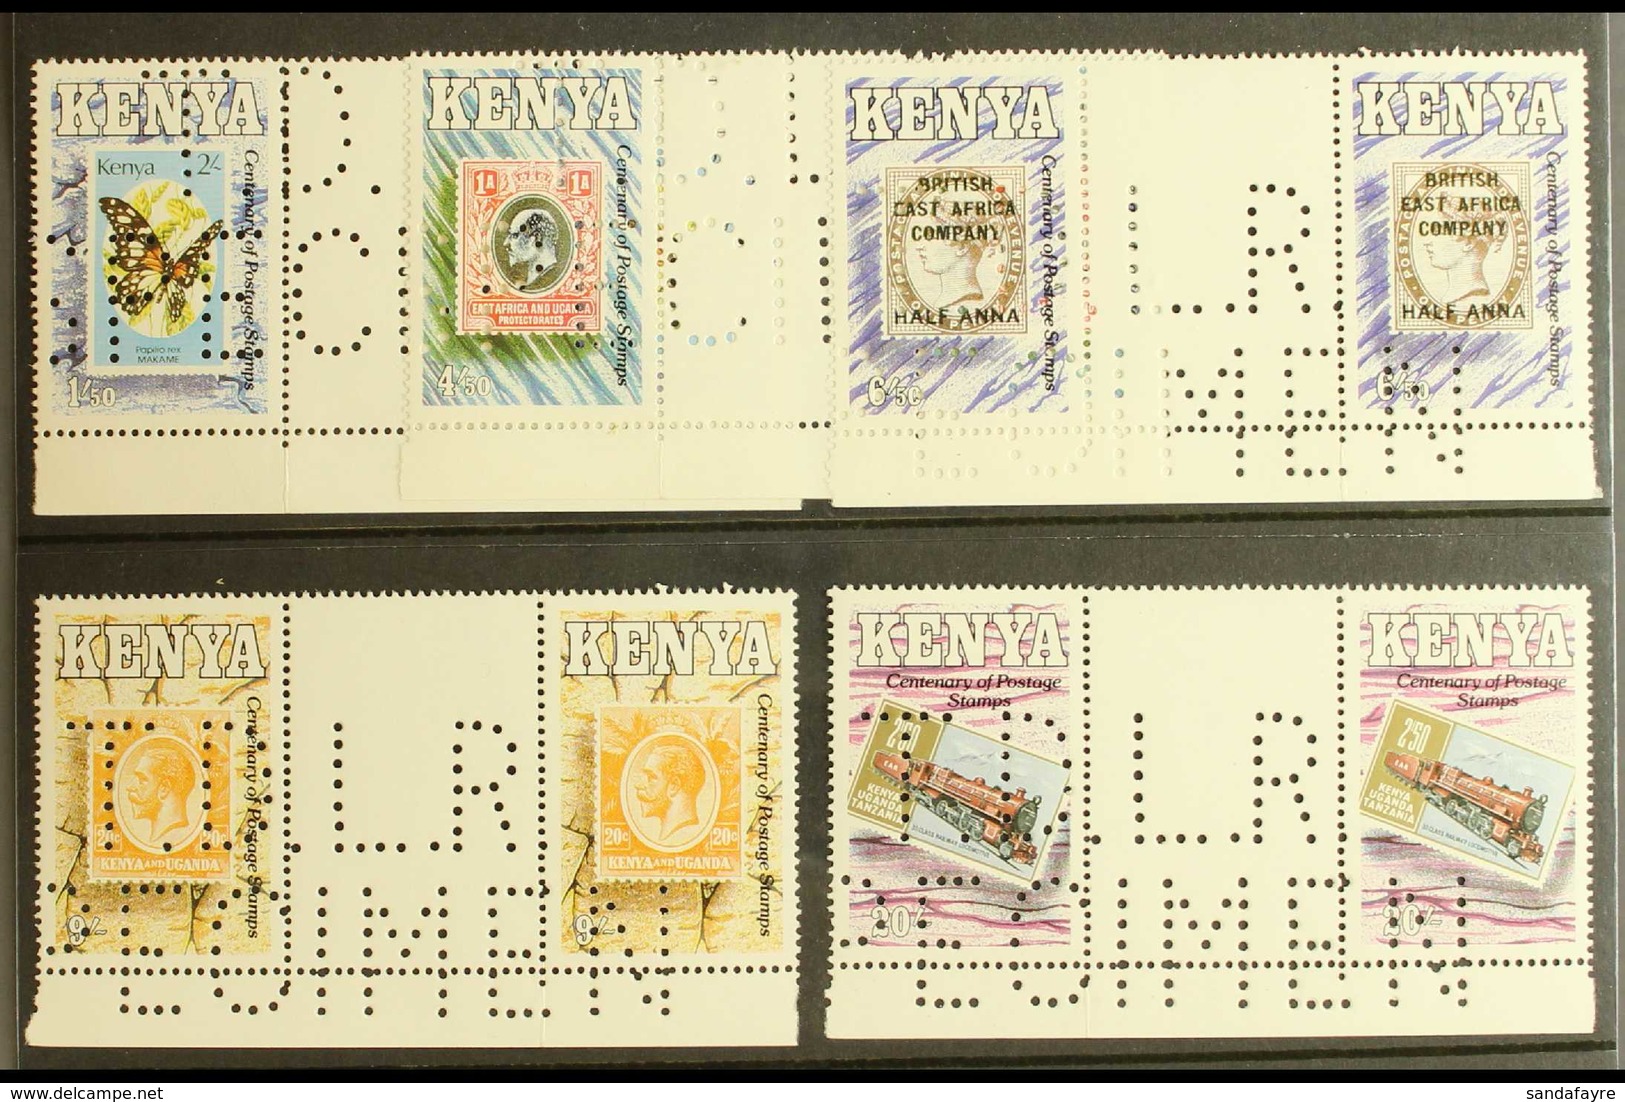 1990 POSTAL CENTENARY - DLR SPECIMENS Centenary Of Postage Stamps In Kenya Set (SG 547/51) In Never Hinged Mint Gutter P - Kenya (1963-...)